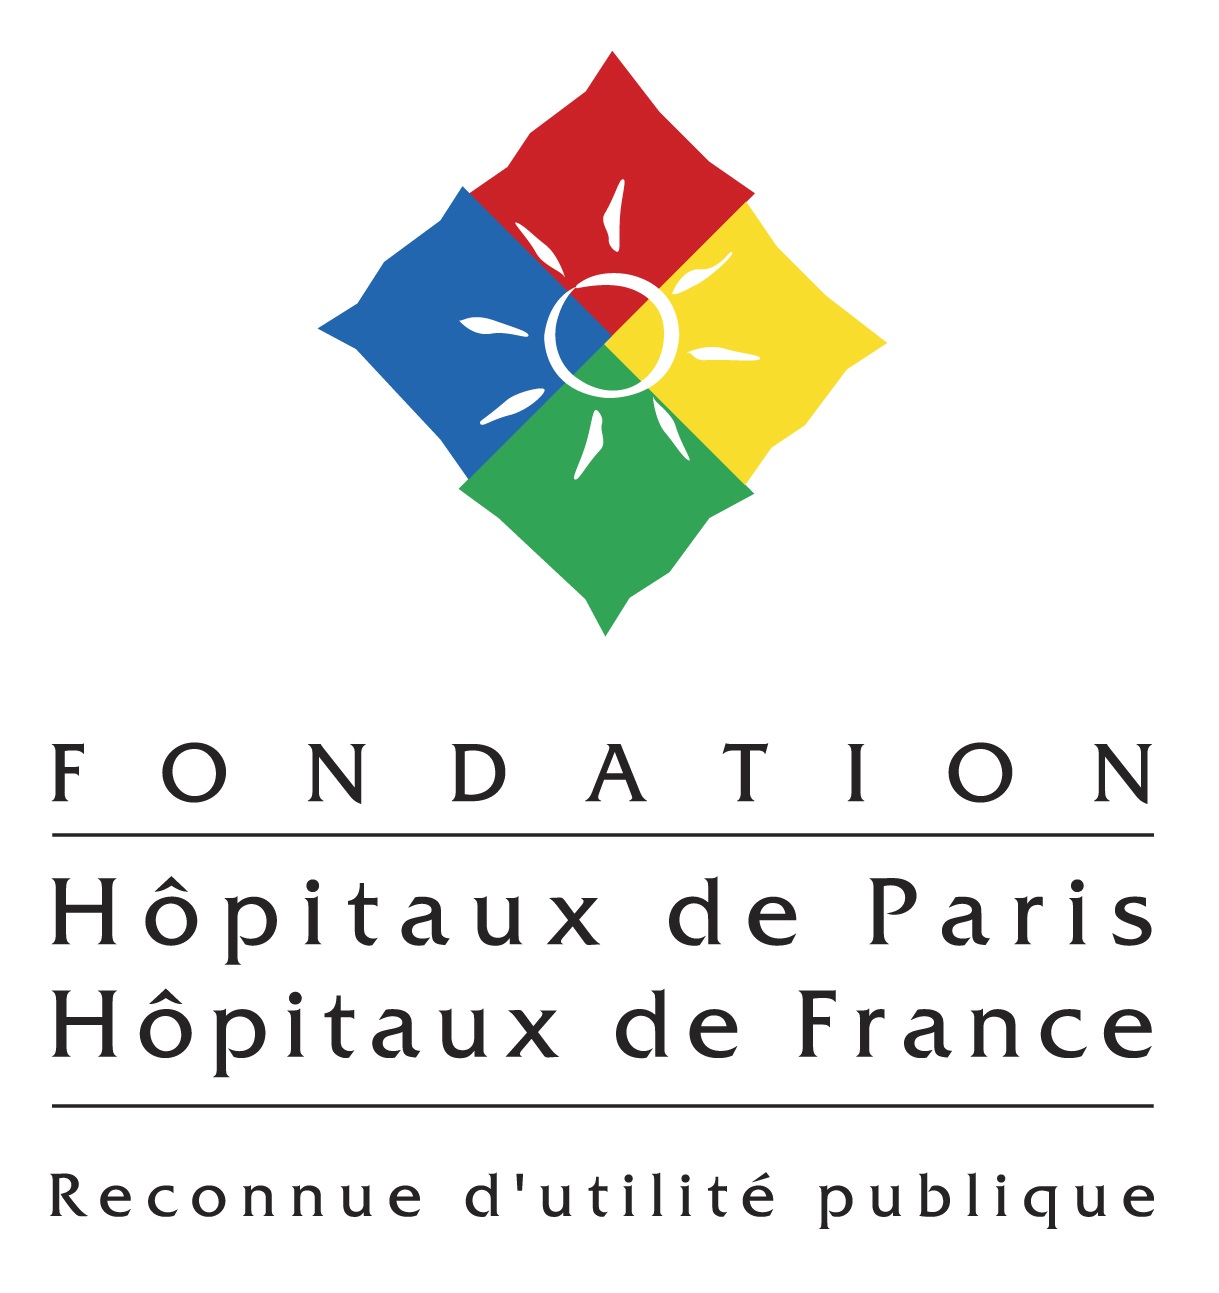 Fondation Hôpitaux de Paris - Hôpitaux de France